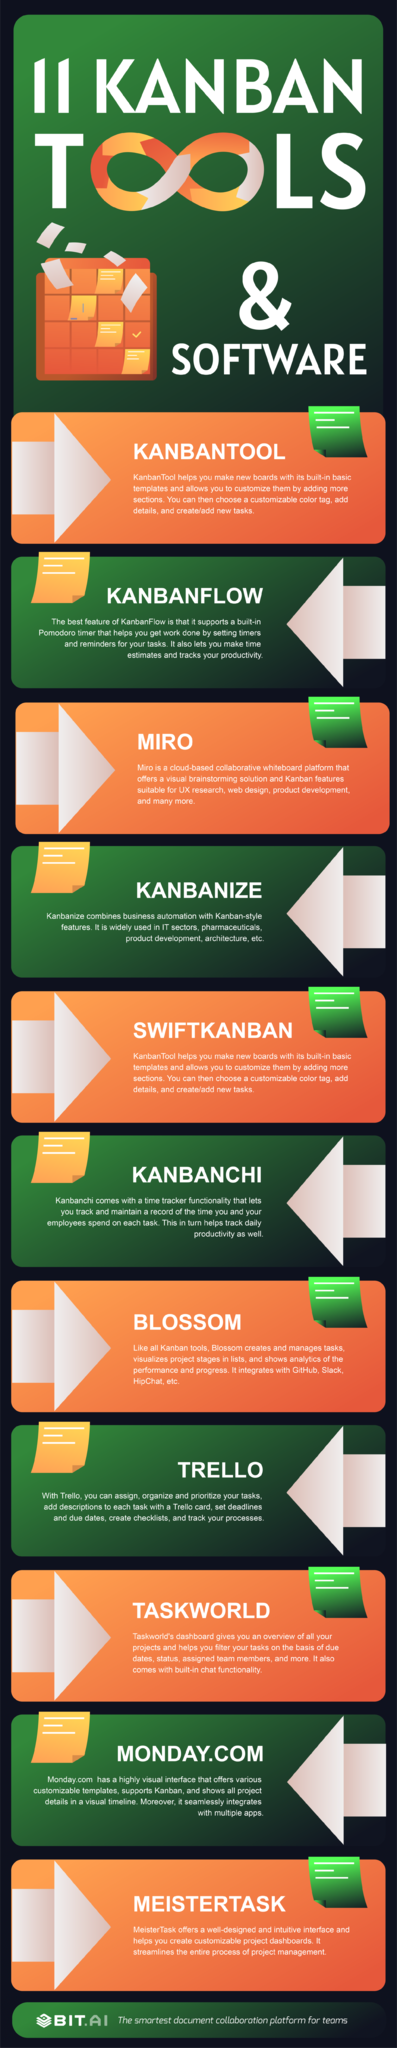 Kanban tools infographic